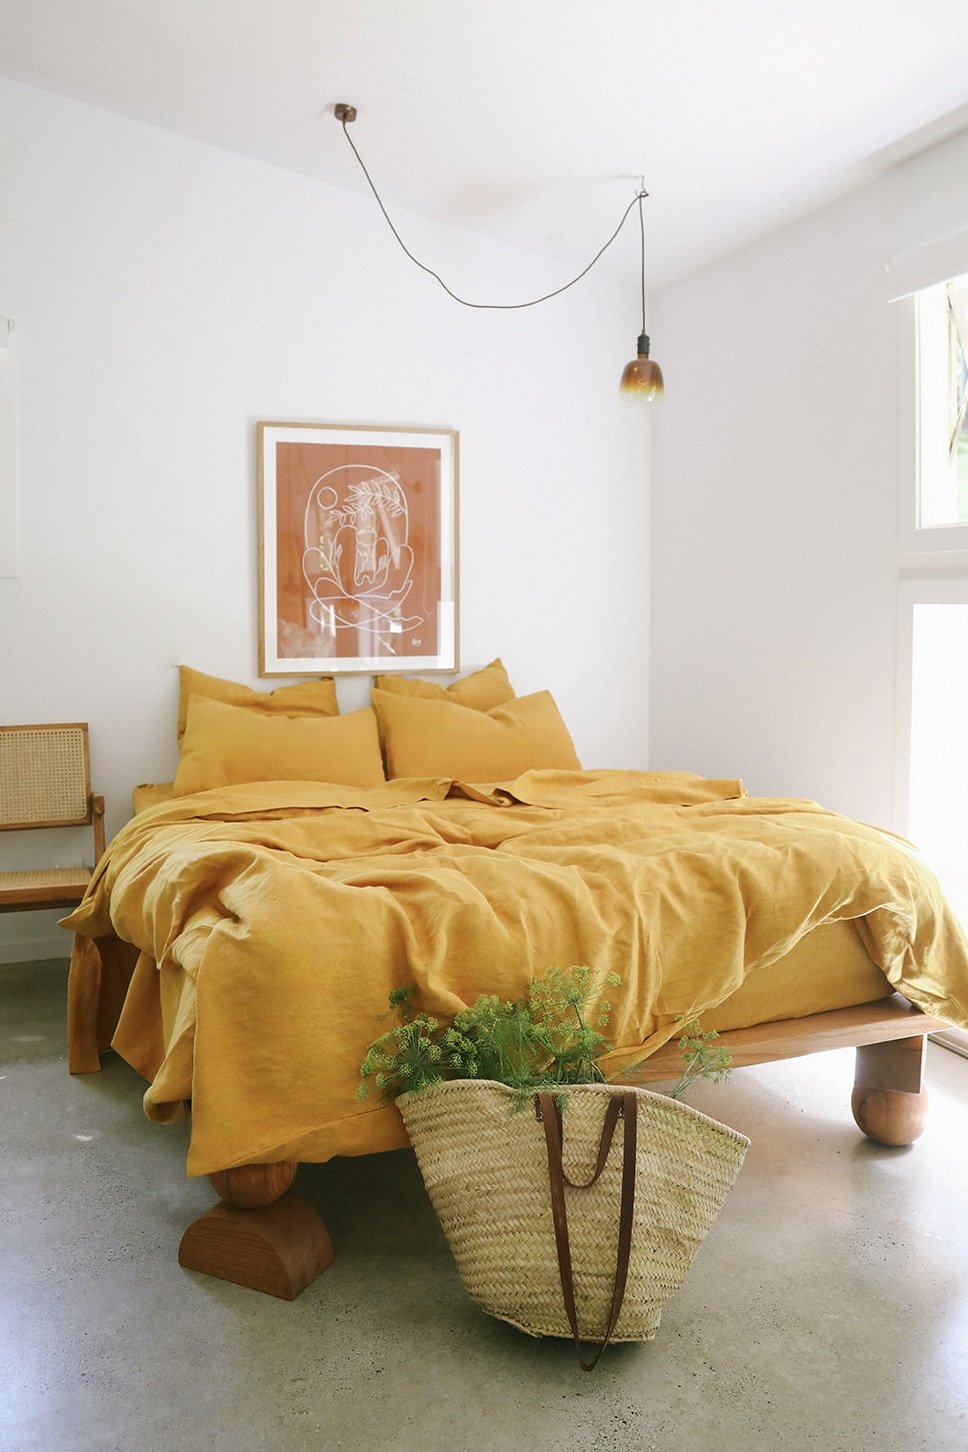 Hemp Bed Linen | 100% Pure Hemp Natural Fibre Eco Sheets & Bedding ...